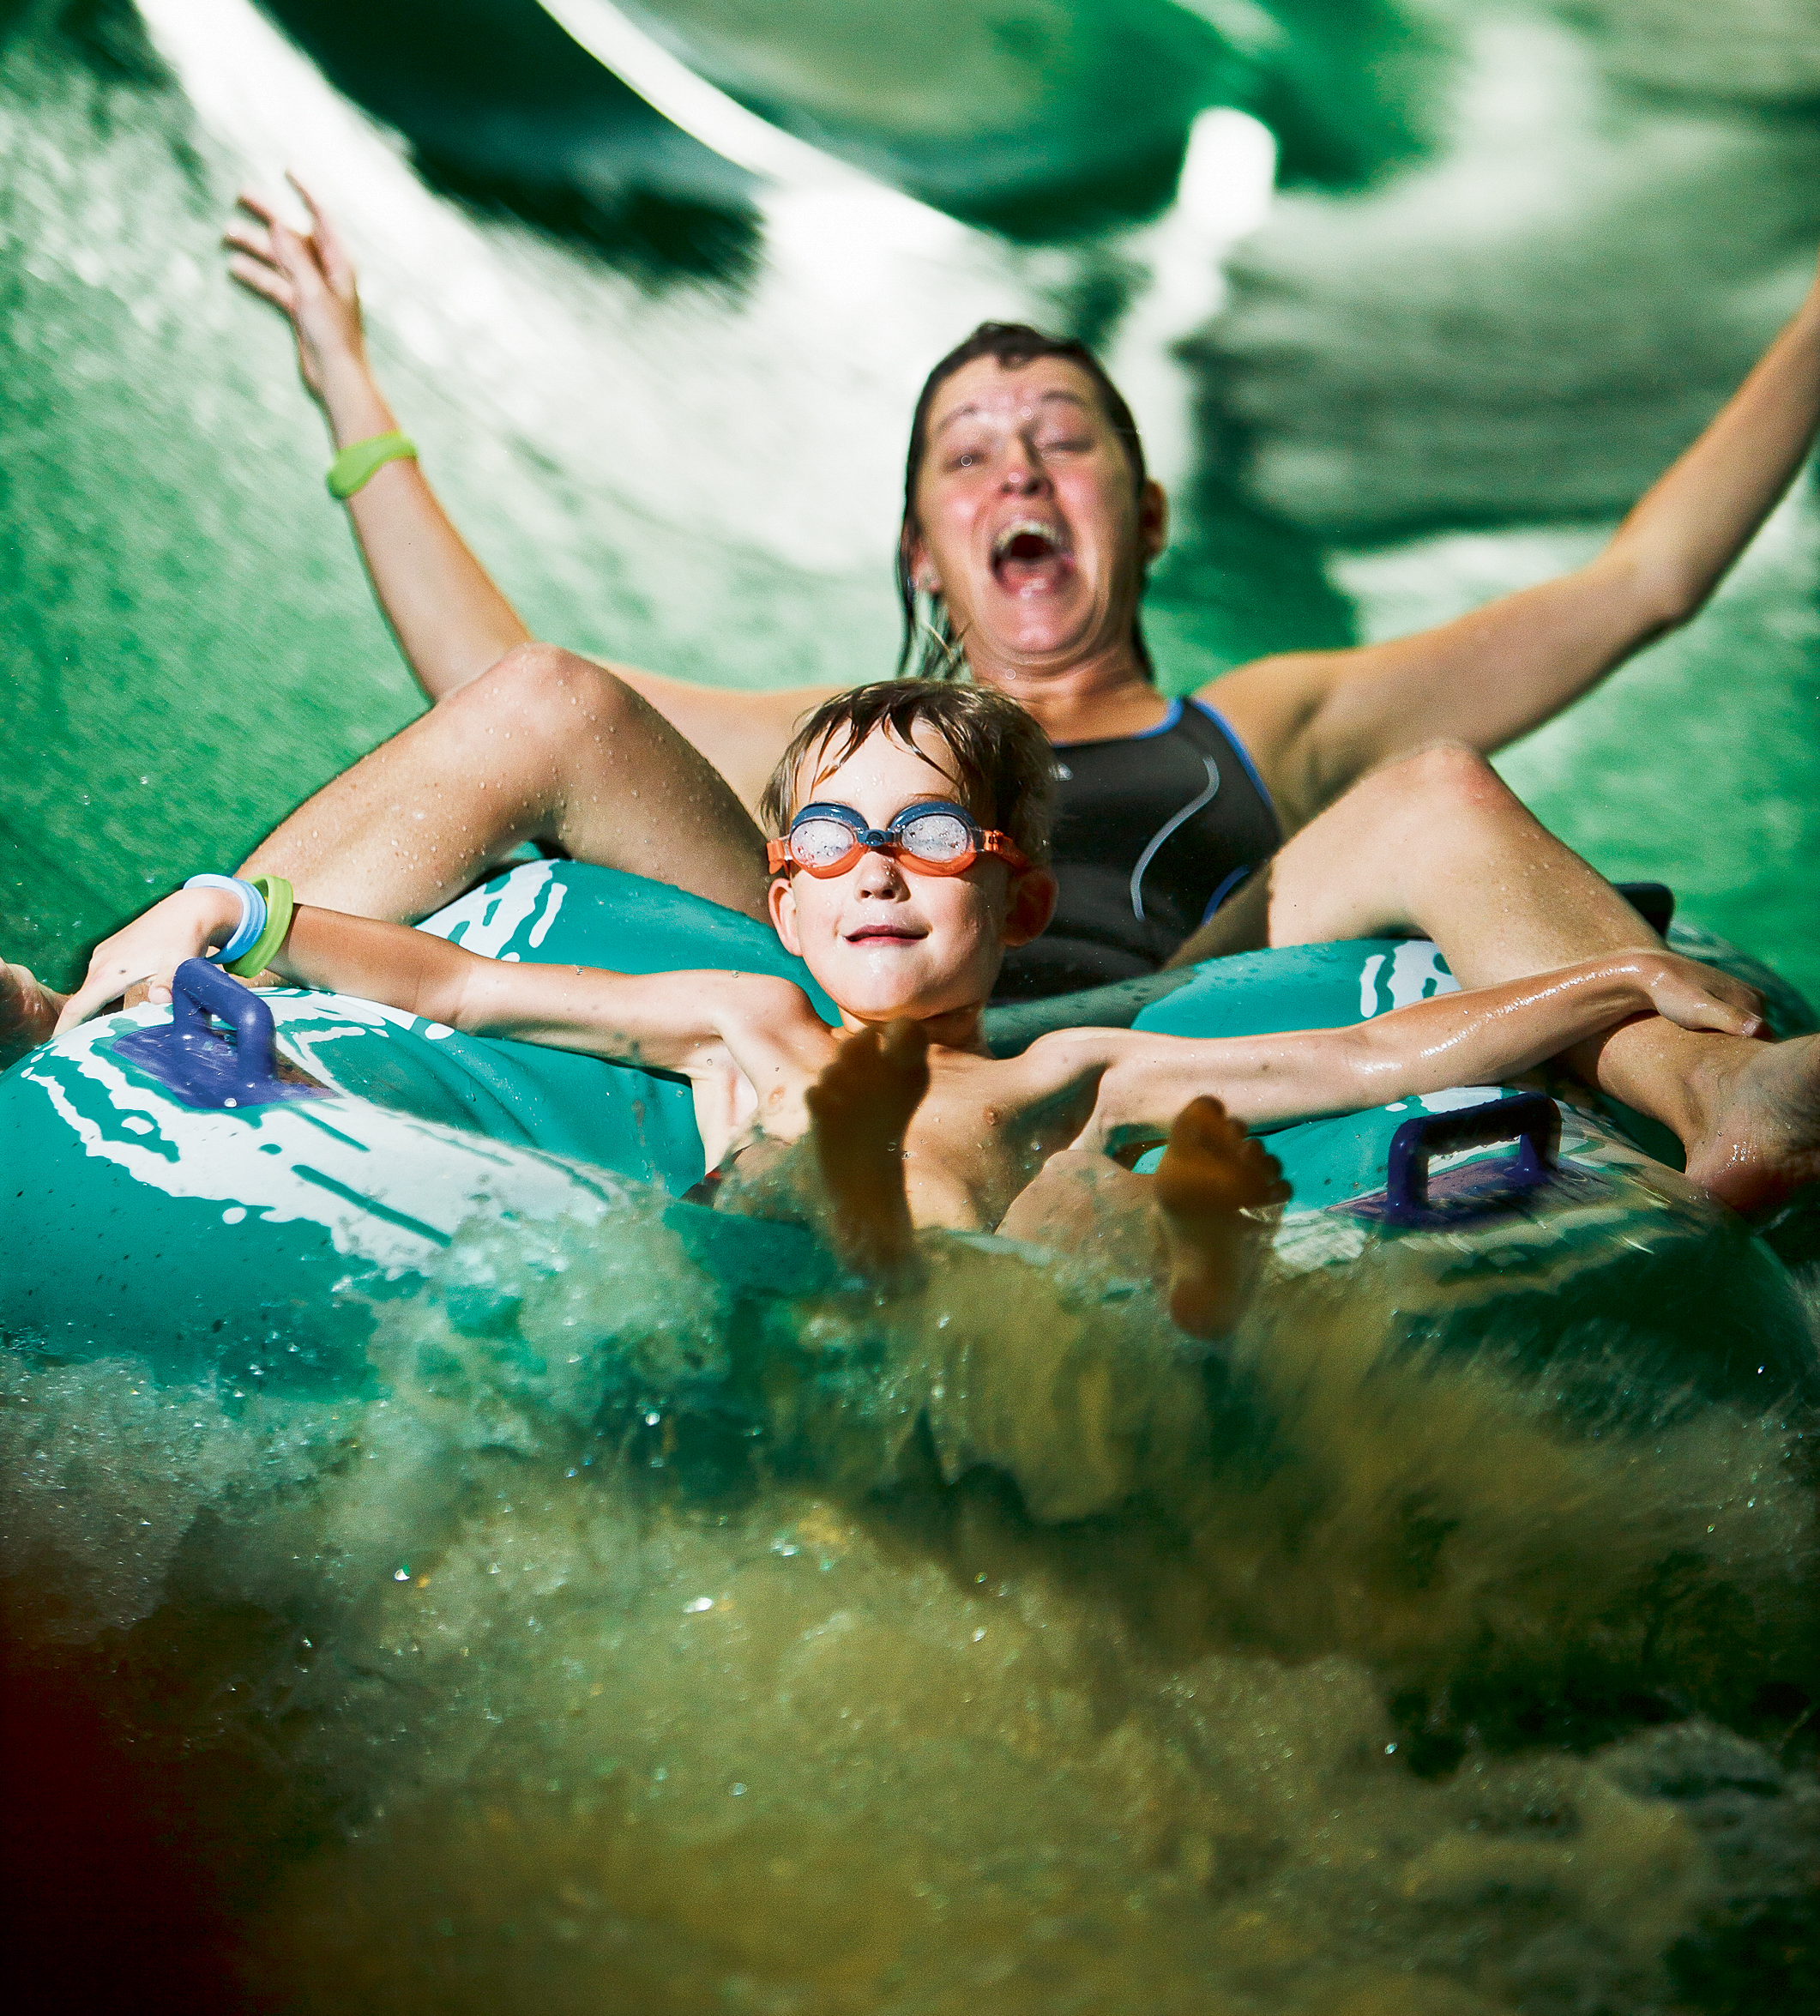 Två personer åker på en grön ring i en grön vattenrutschbana. De båda sträcker ut armarna och ser väldigt glada ut. Det stänker vatten överallt. 